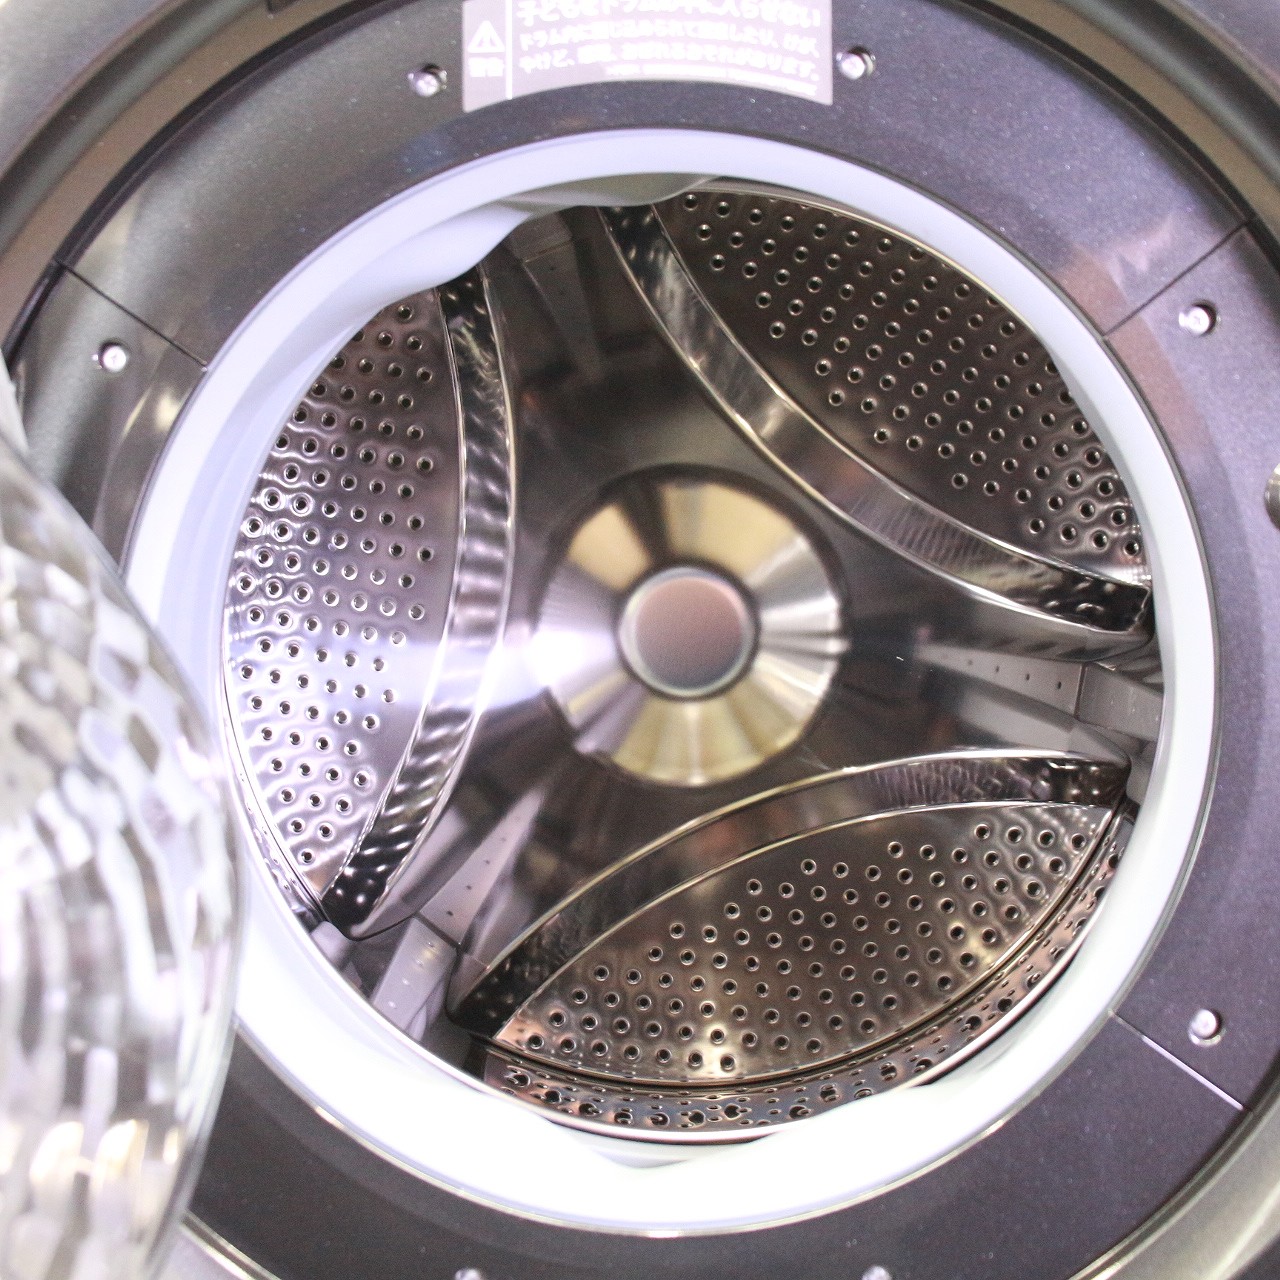 〔展示品〕 ドラム式洗濯乾燥機 ホワイト ES-S7H-WL ［洗濯7.0kg ／乾燥3.5kg ／ヒーター乾燥(水冷・除湿タイプ) ／左開き］